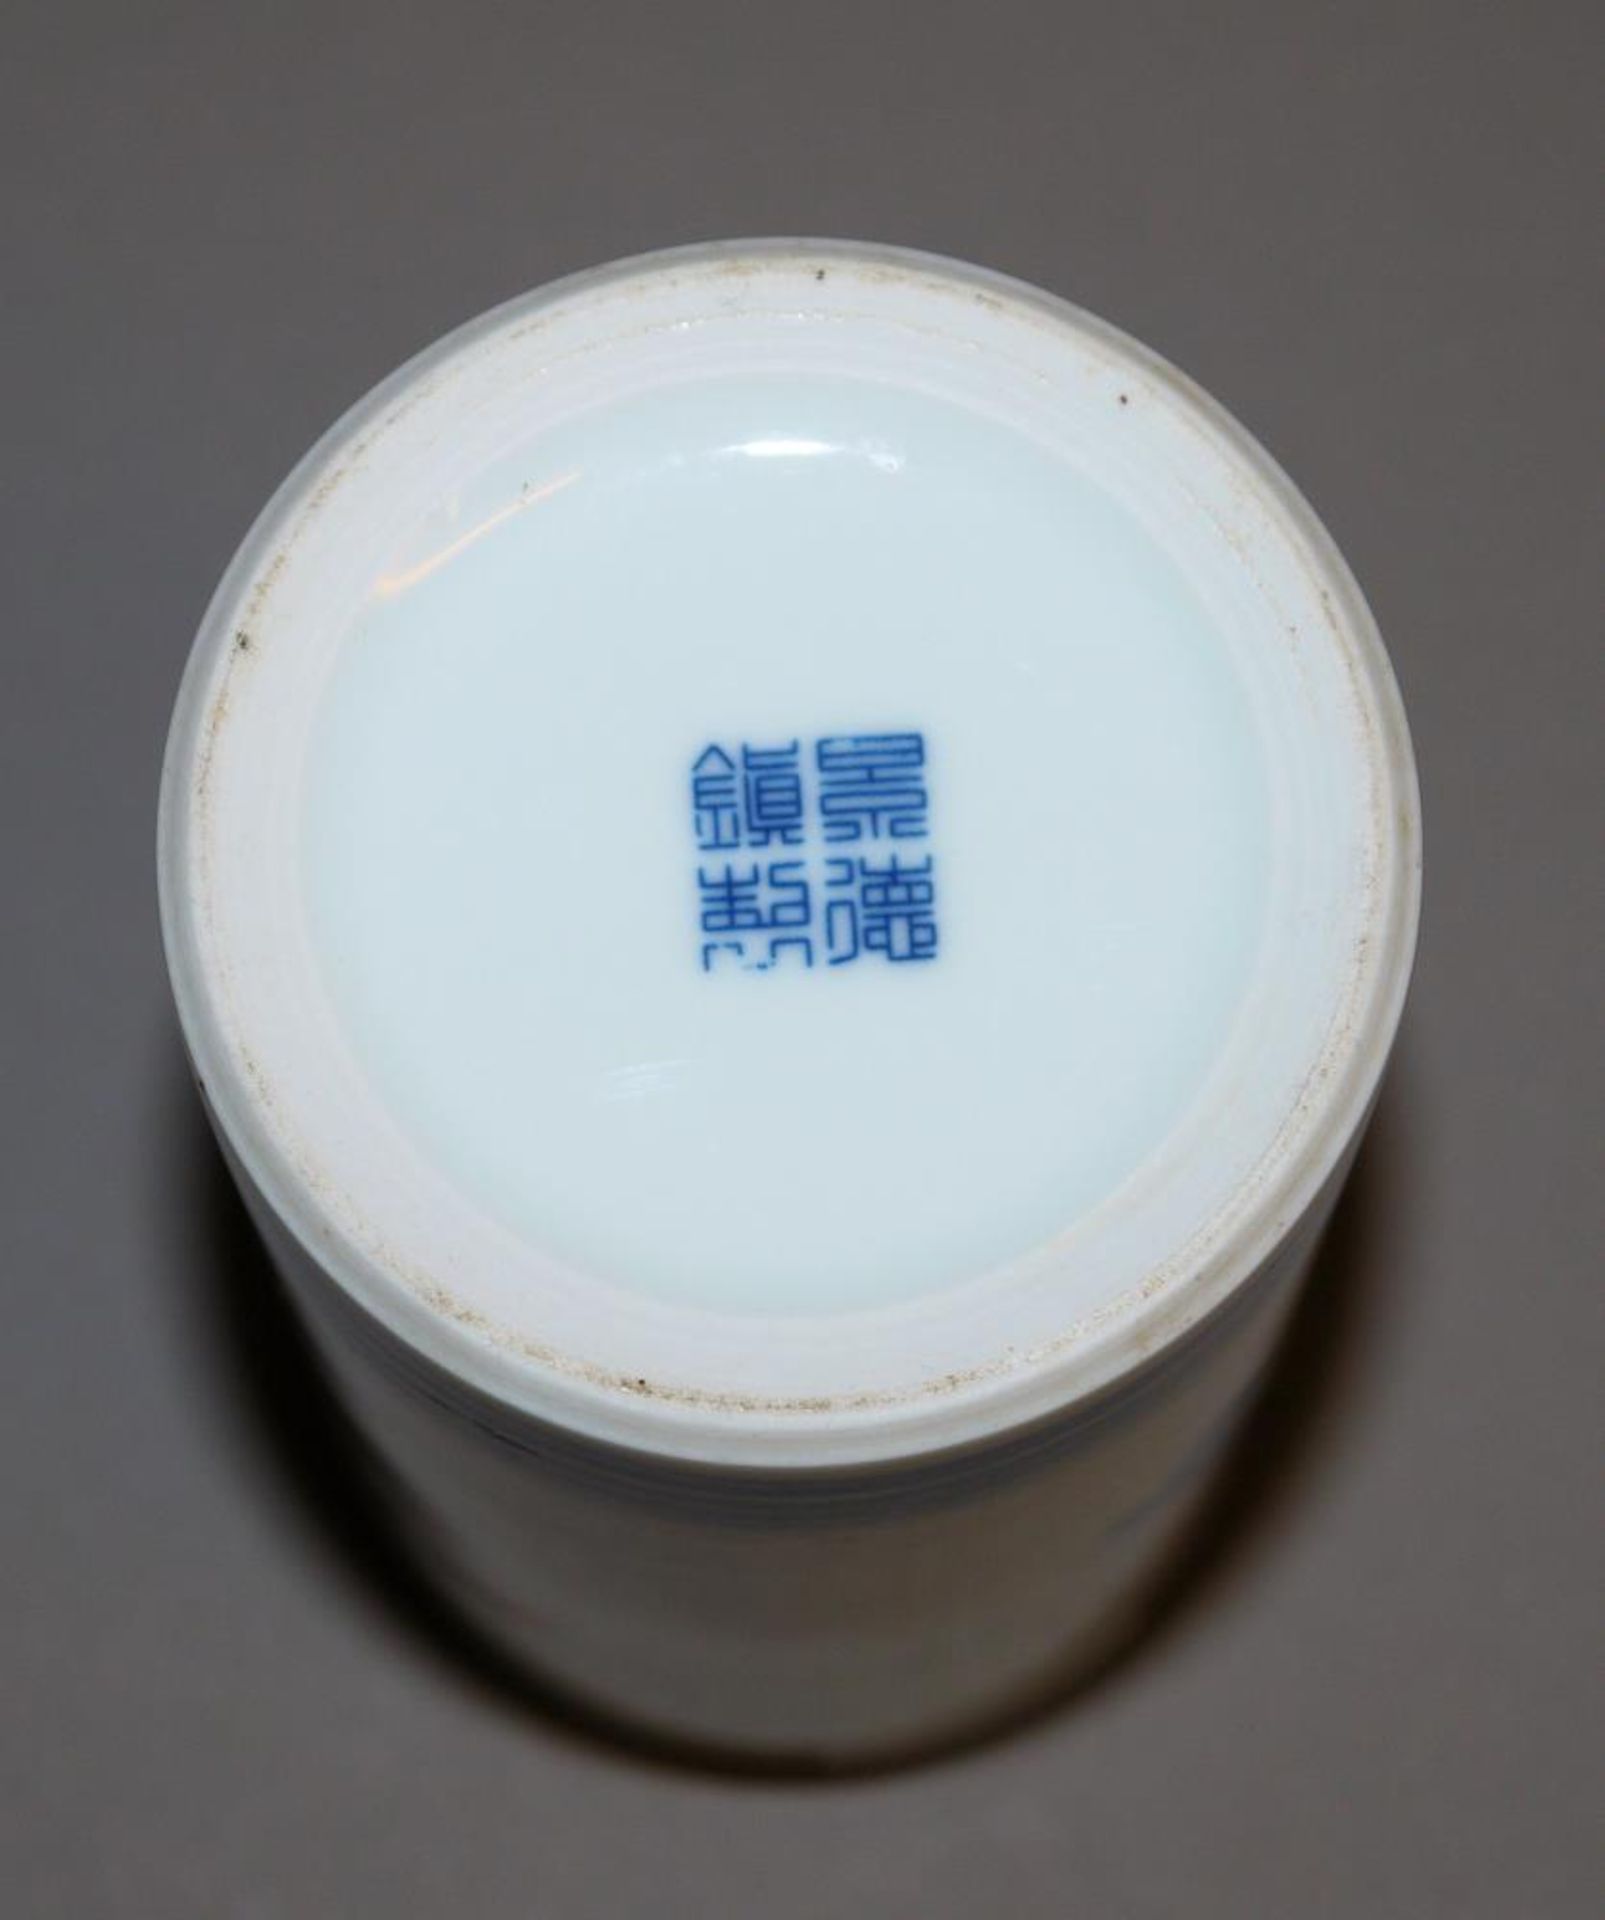 Blauweiß-Pinselbecher in Art des Qi Baishi, China 20. Jh. Zylinderbecher aus Porzellan, im Stil - Image 3 of 3